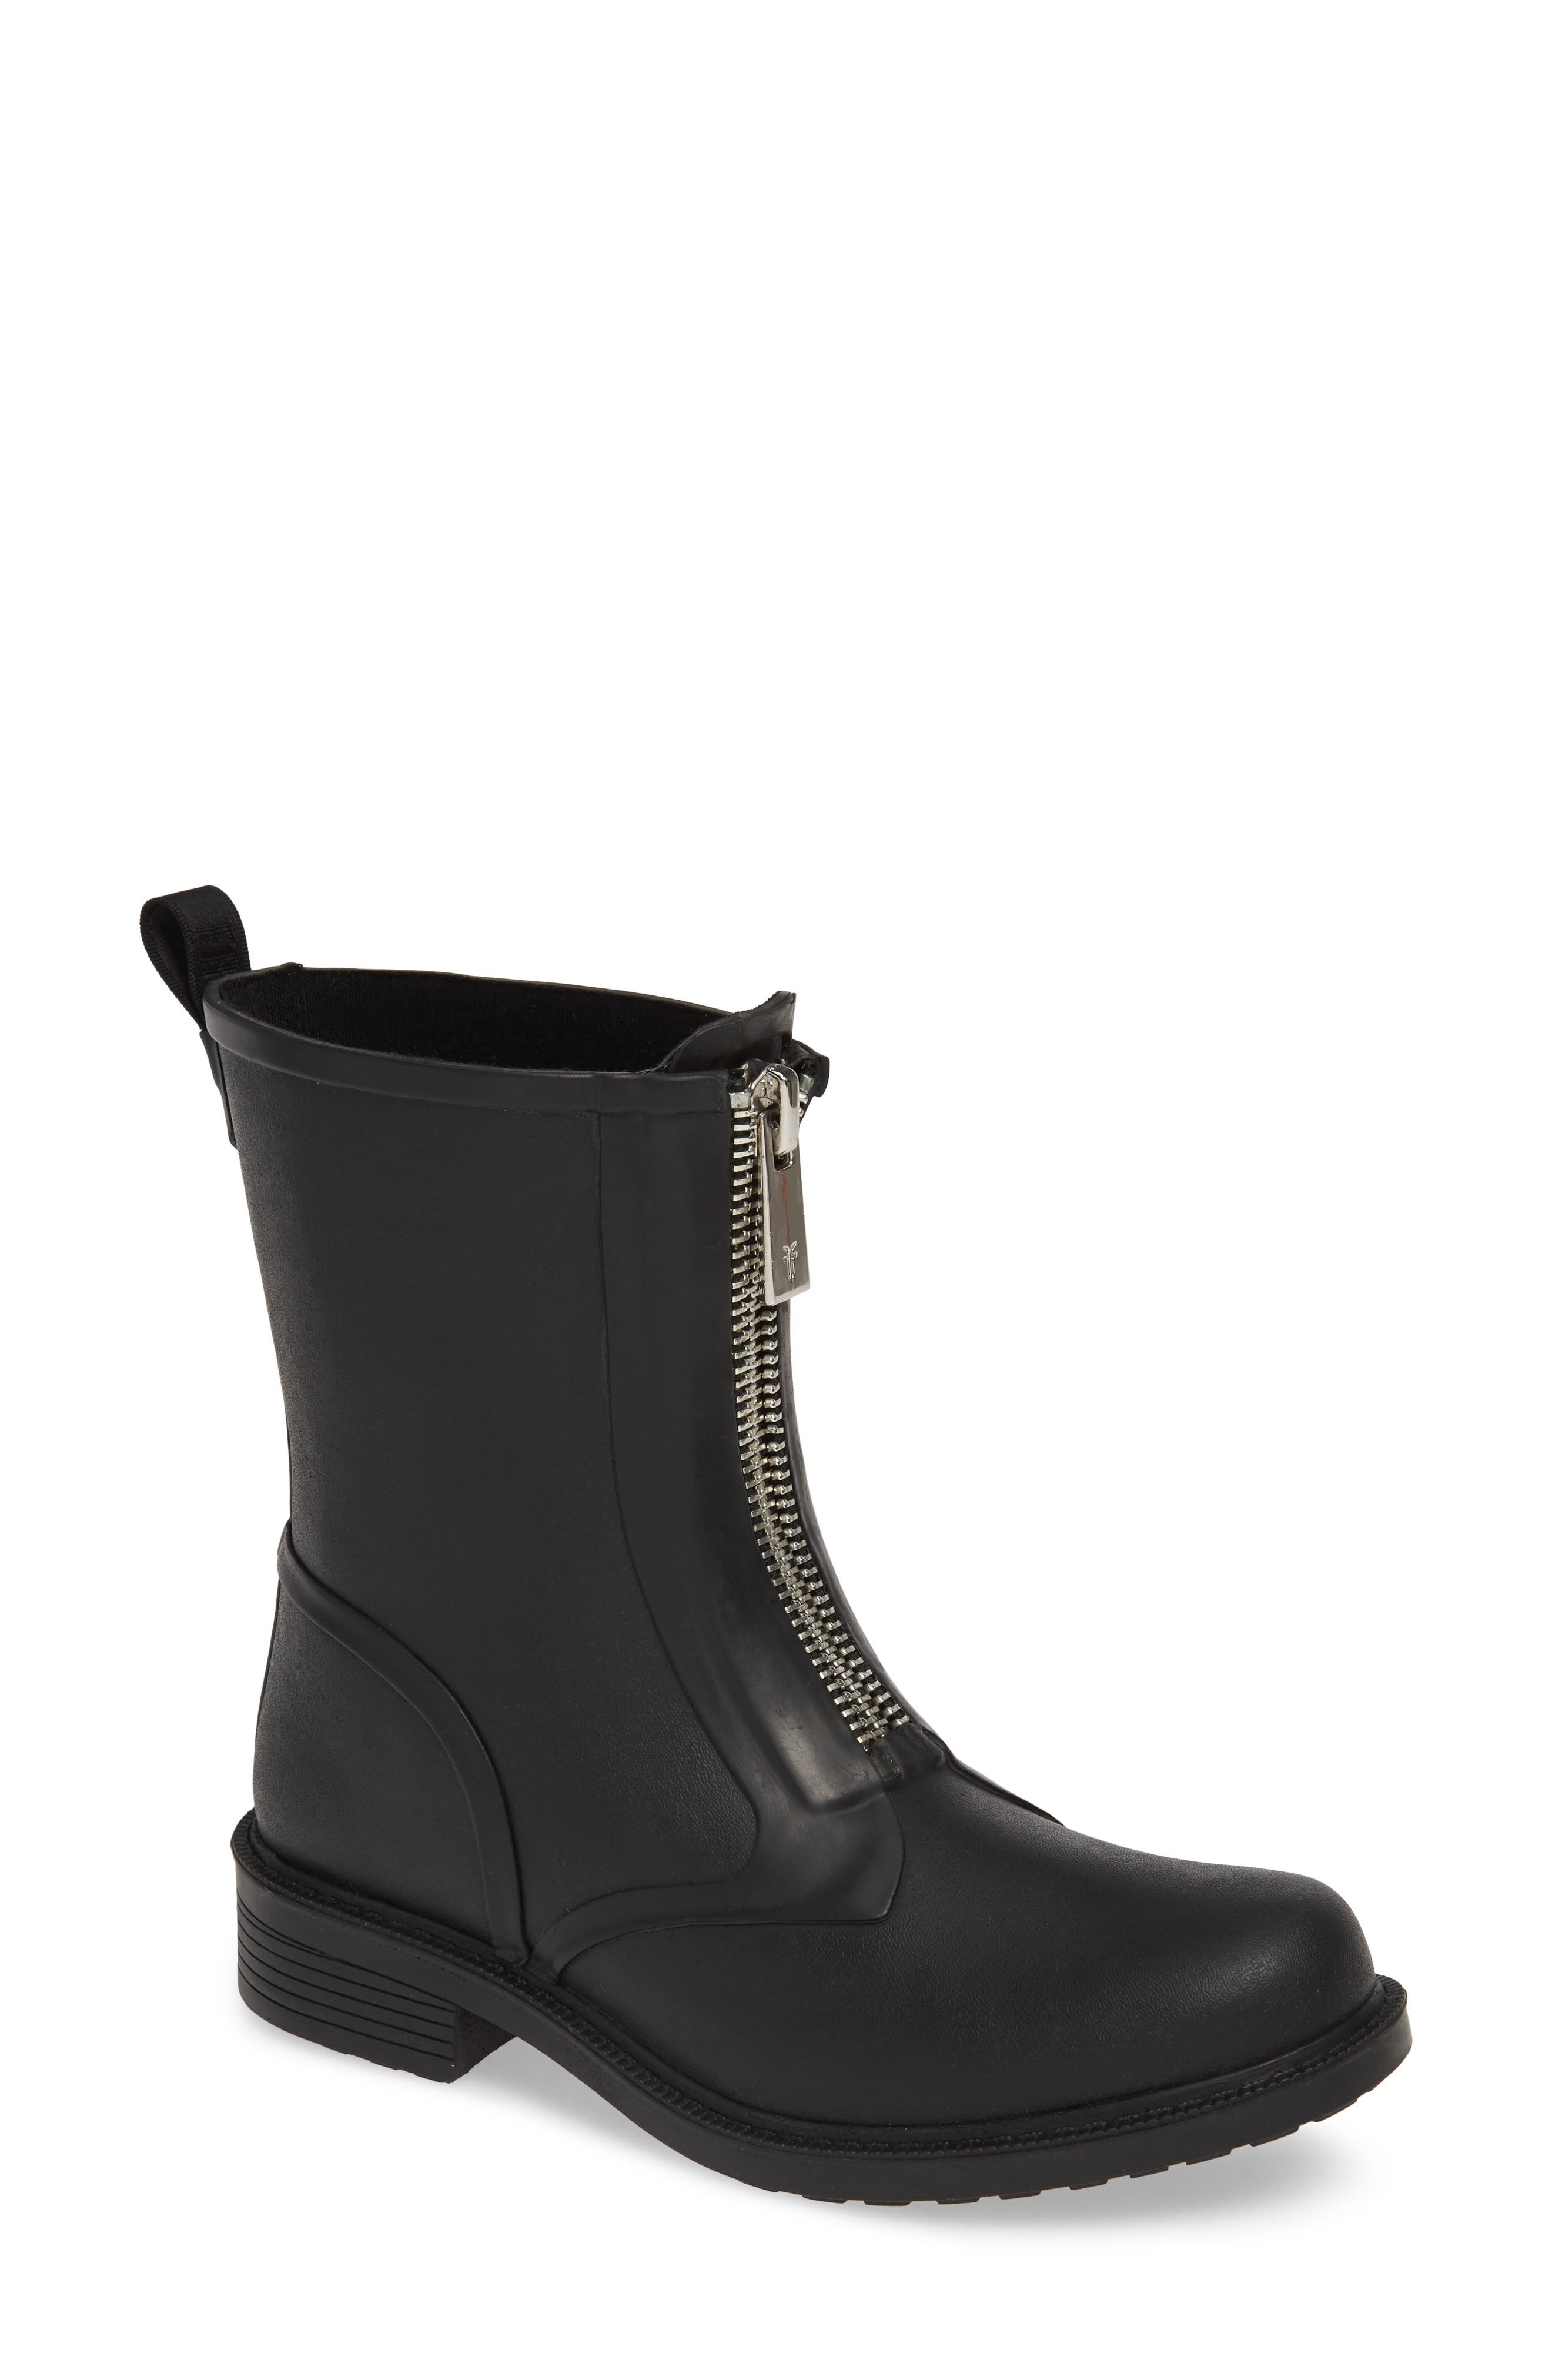 frye rain boots